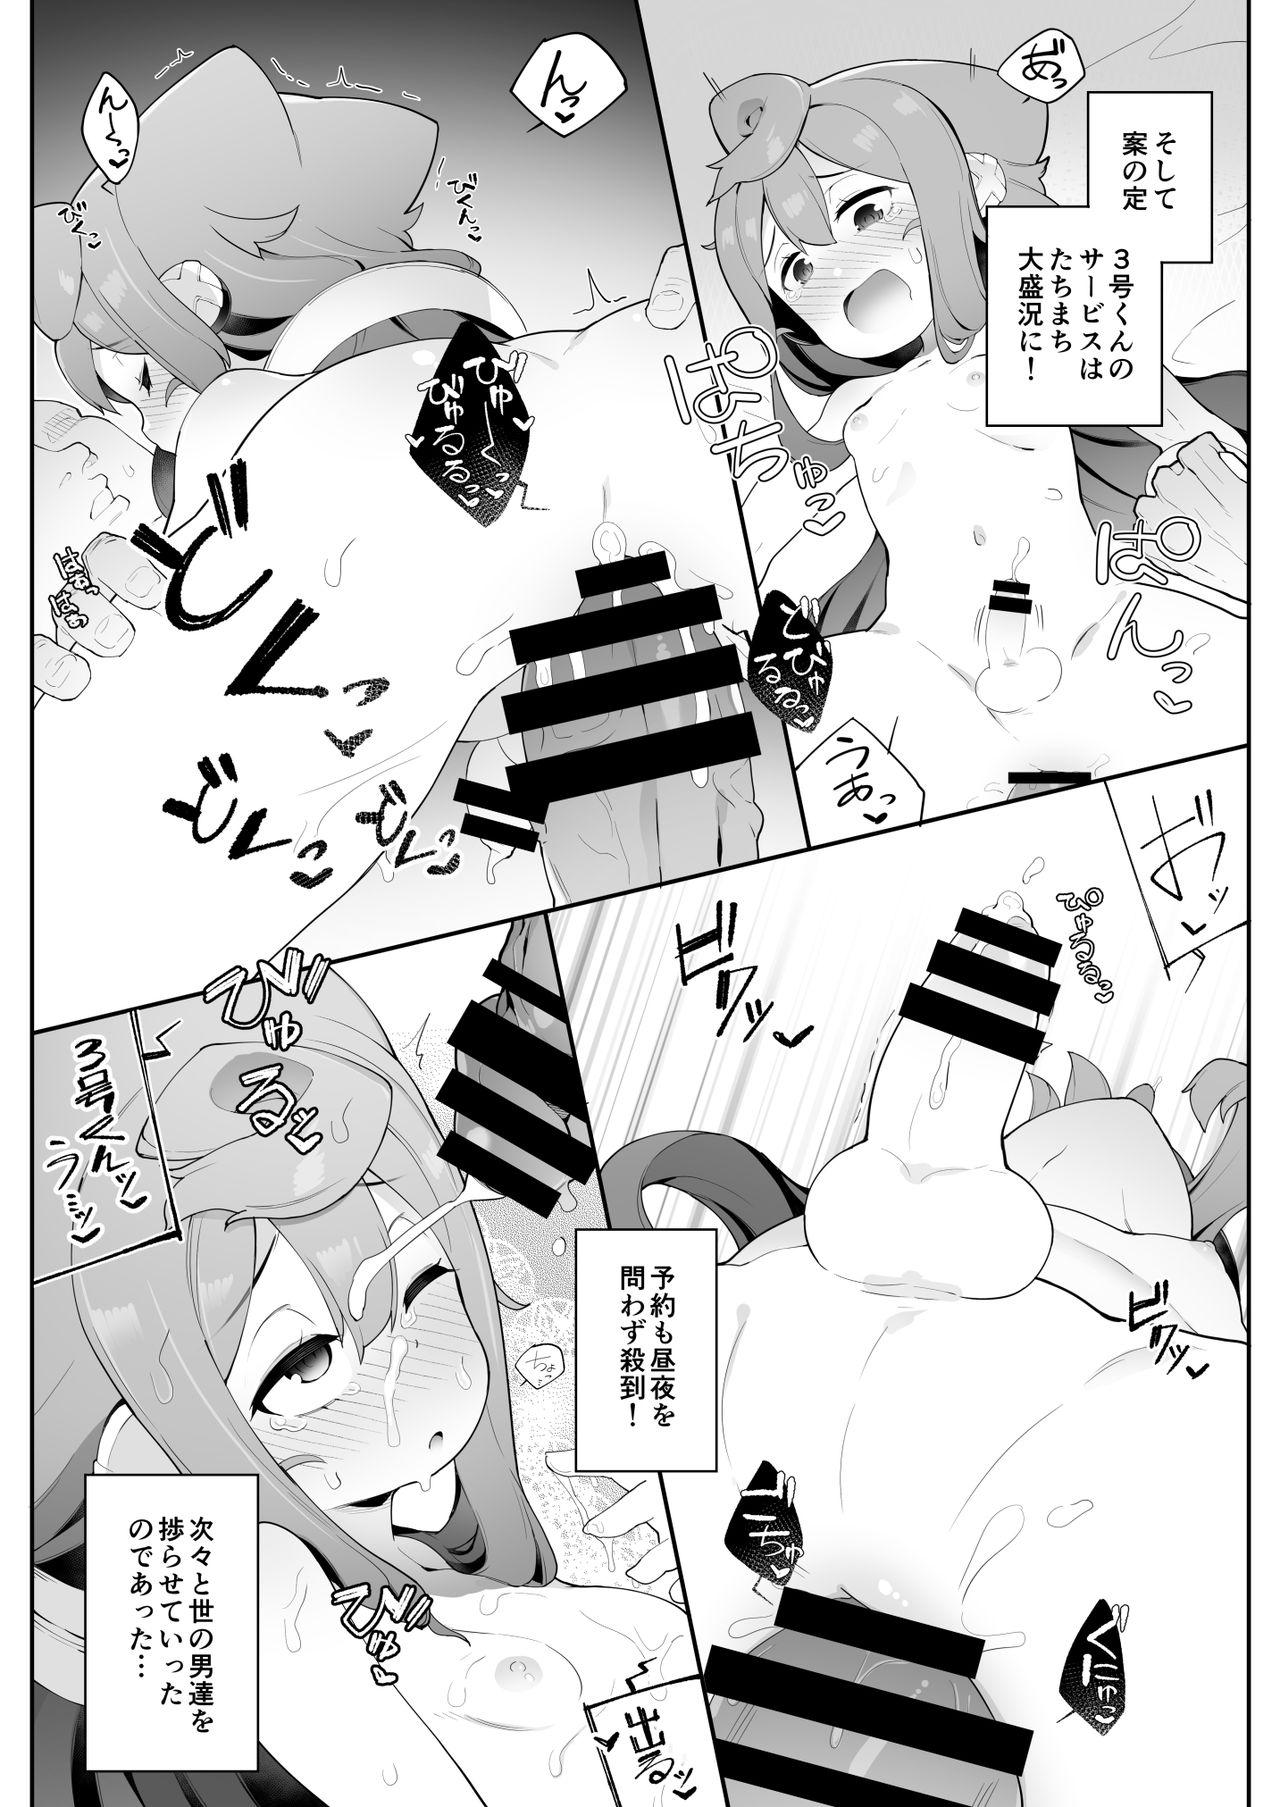 Boyfriend [Kuropoplar (Nyakkuru)] HakaDol! 3-gou-kun no Mesuochi Tokunou DeliHeal Service (Hacka Doll) [Digital] - Hacka doll Ghetto - Page 6